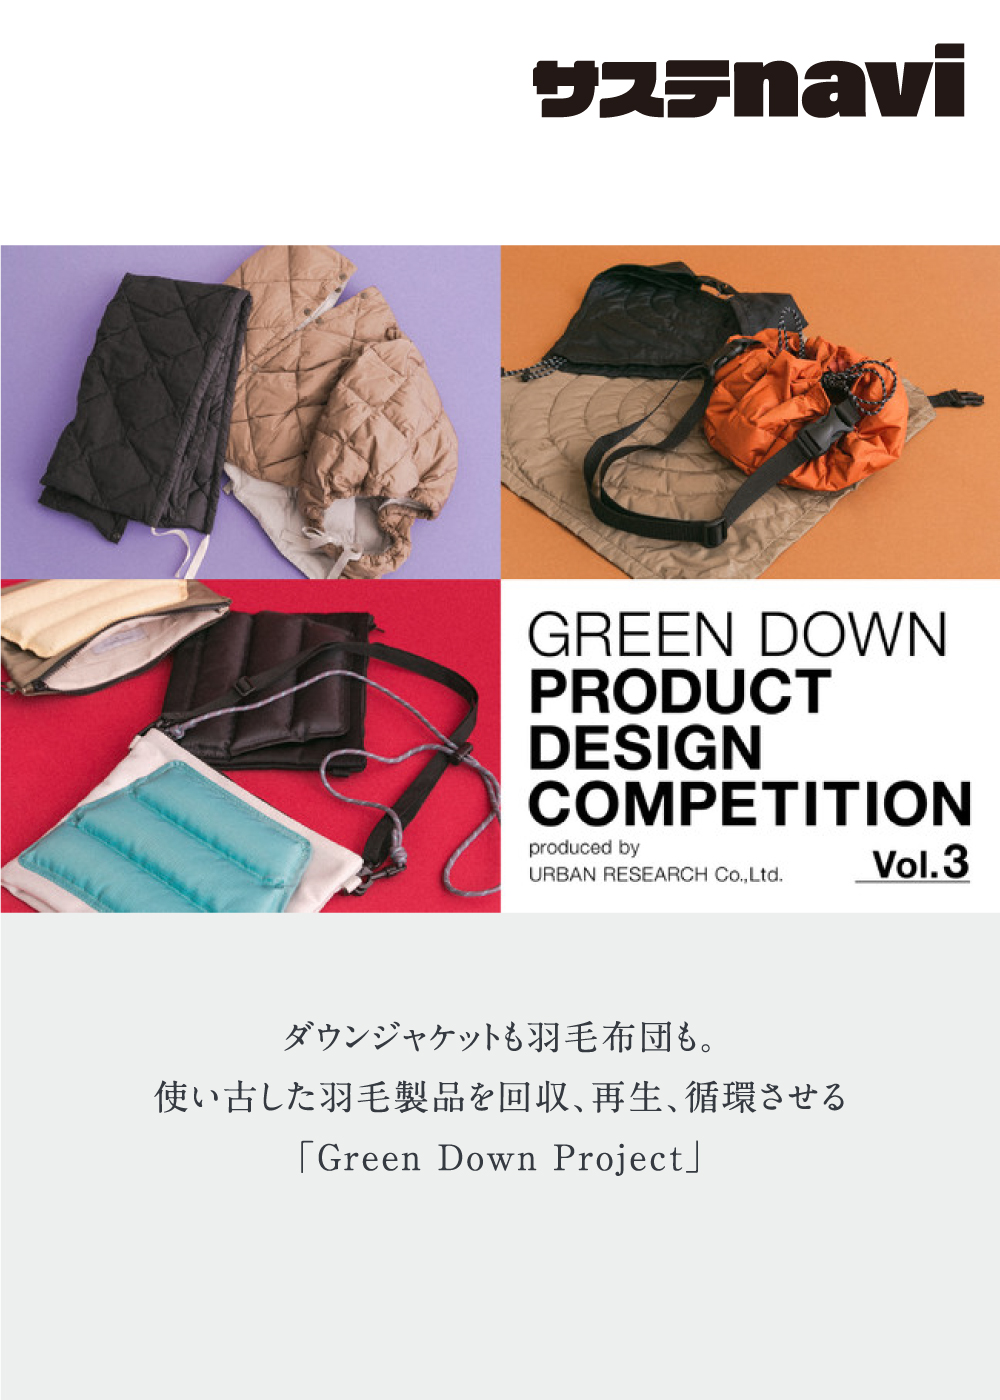 ダウンジャケットも羽毛布団も。使い古した羽毛製品を回収、再生、循環させる「Green Down Project」